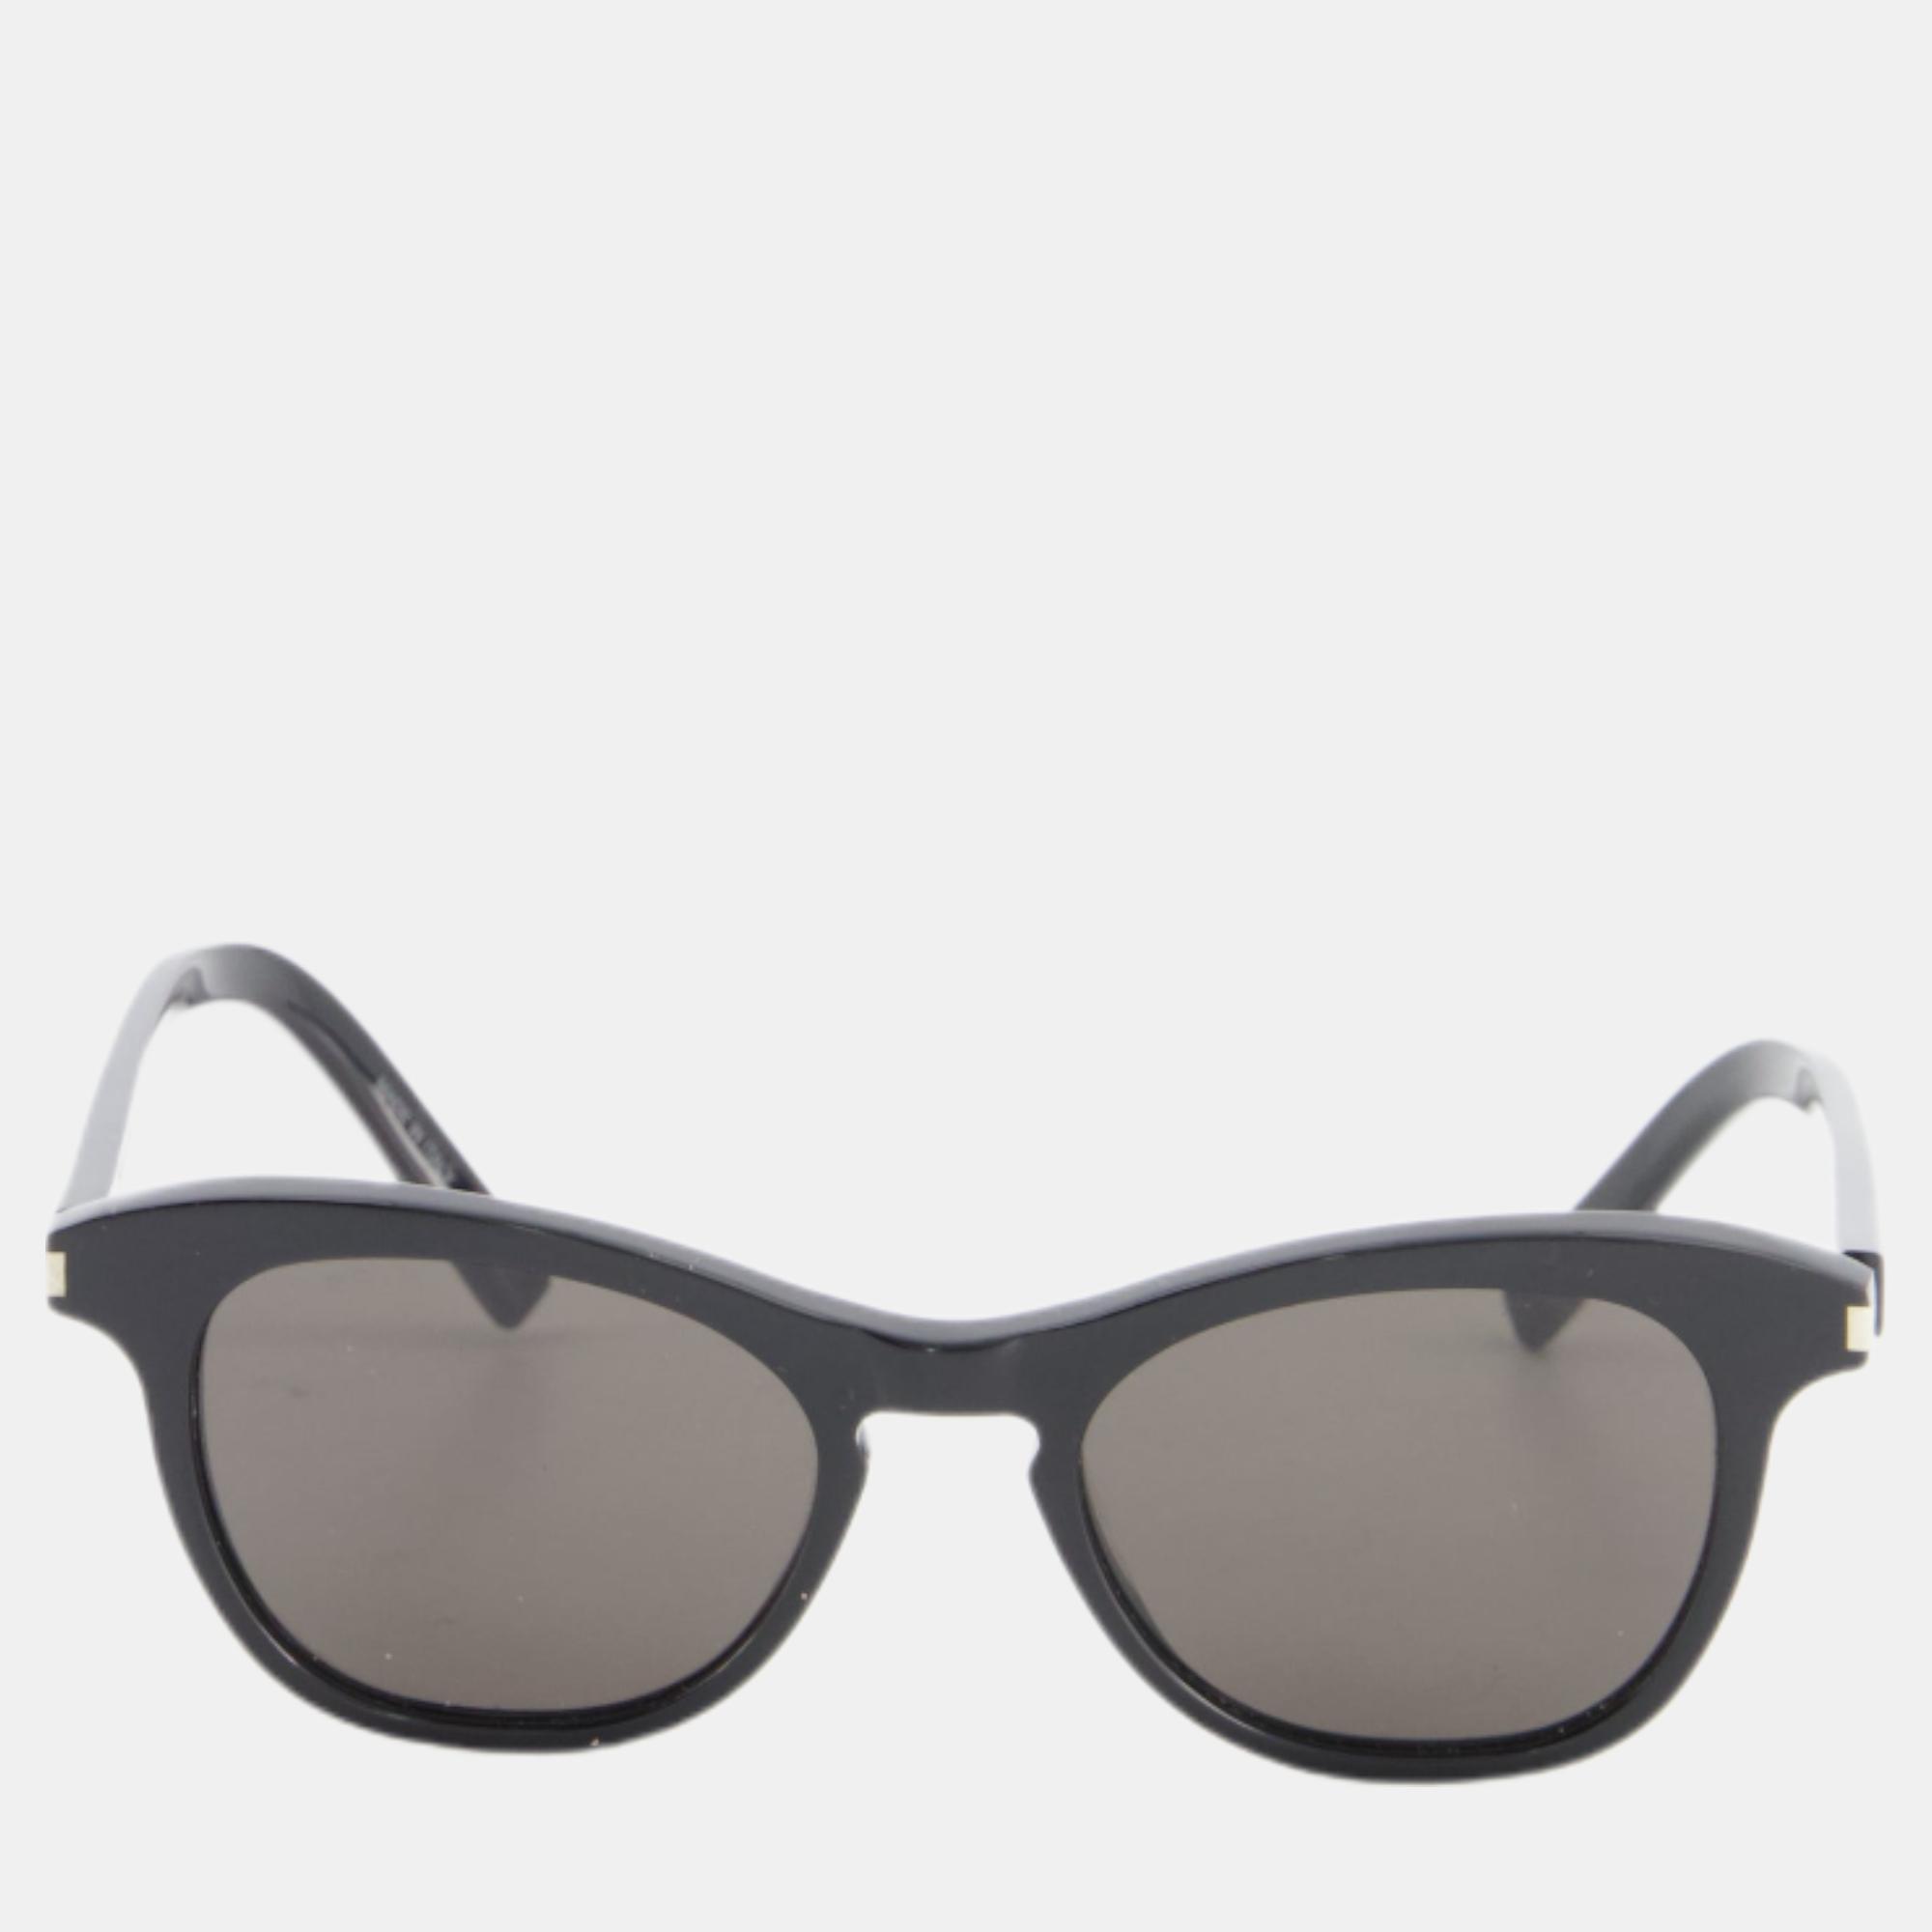 

Saint Laurent Black Square Acetate Sunglasses